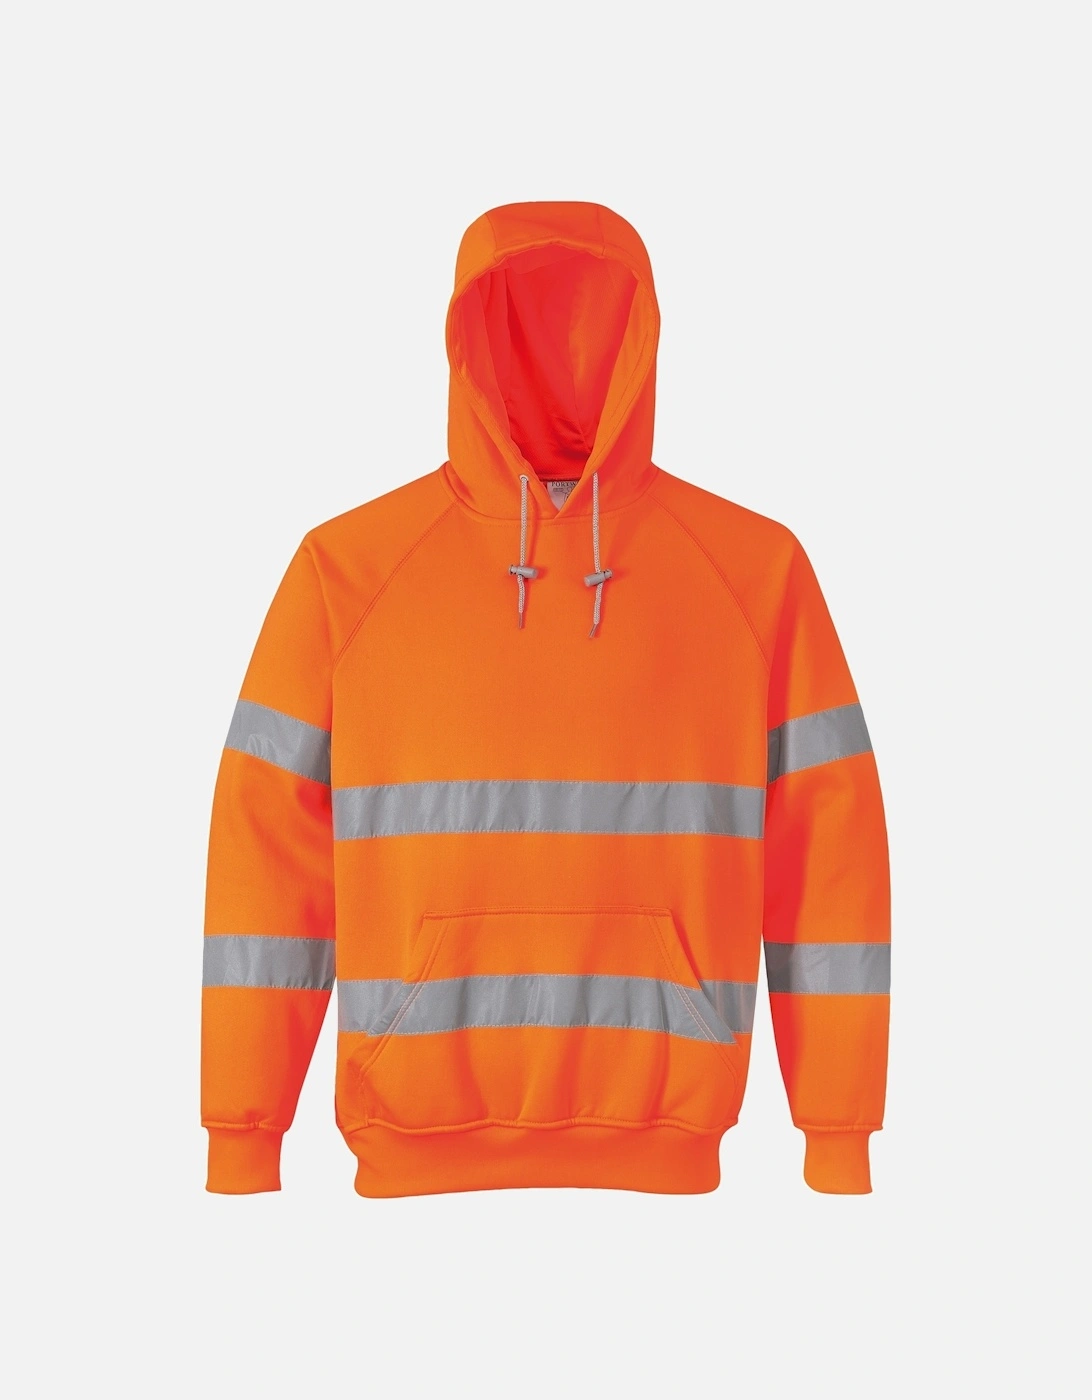 Unisex Hi-Vis Safety Hooded Sweatshirt / Hoodie, 2 of 1